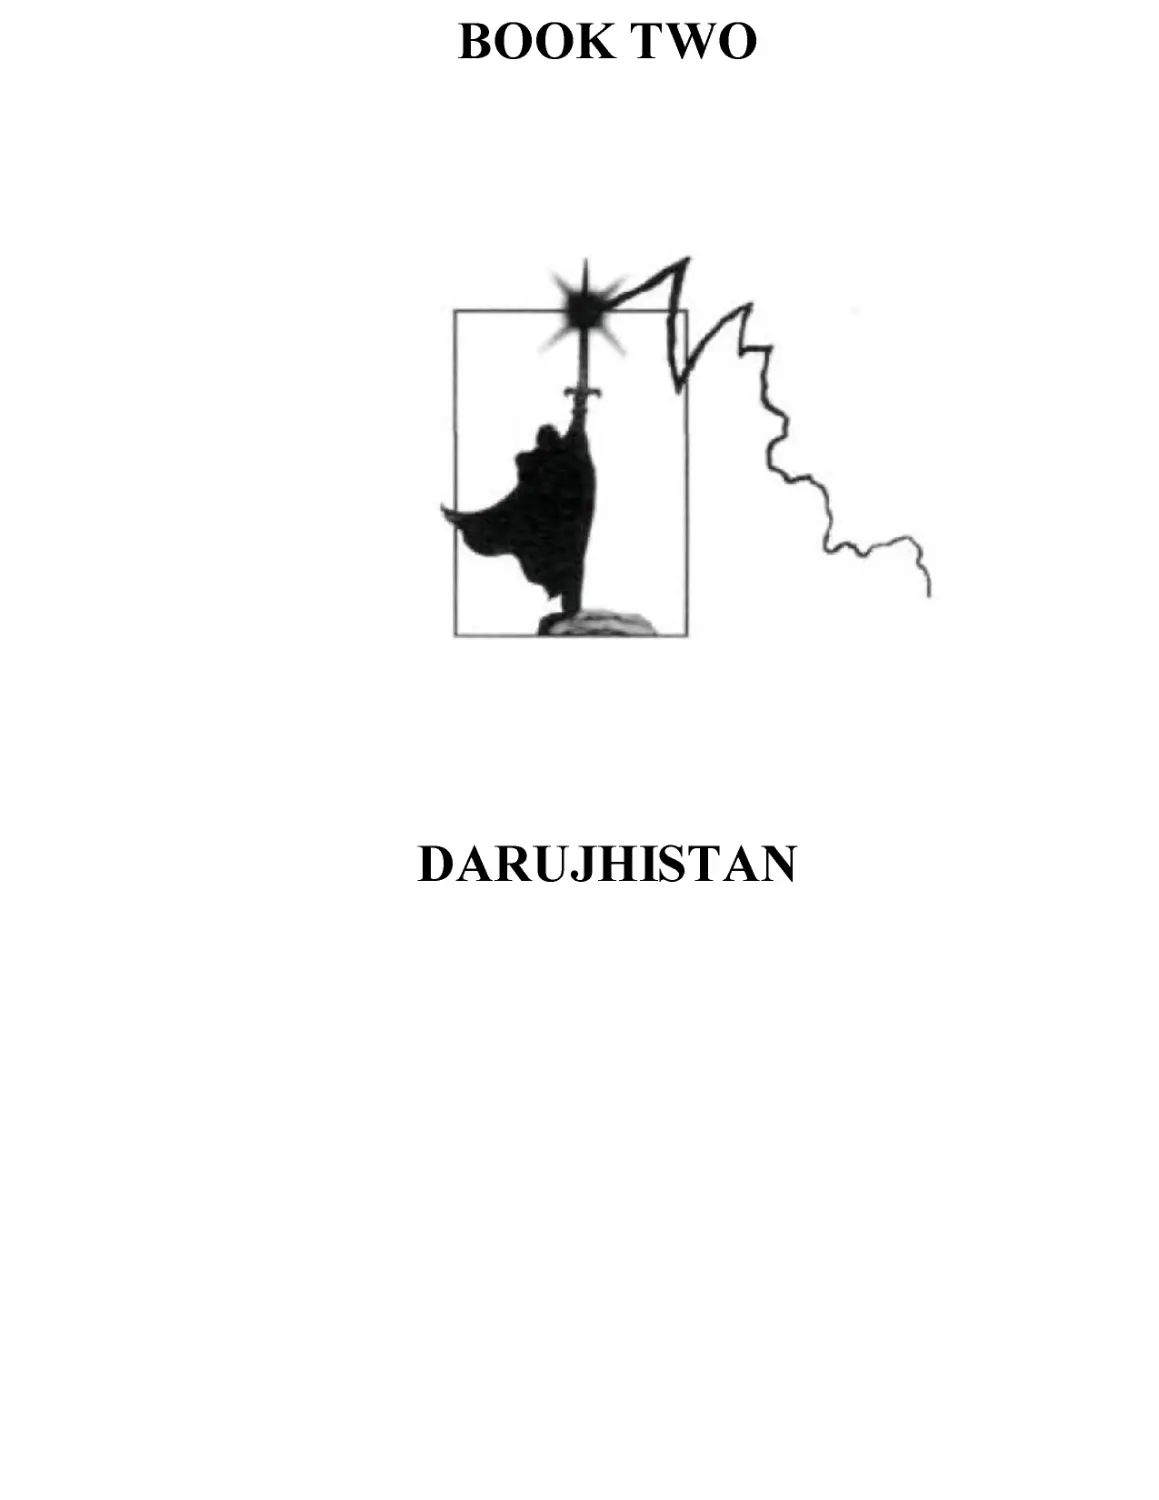 BOOK TWO: DARUJHISTAN